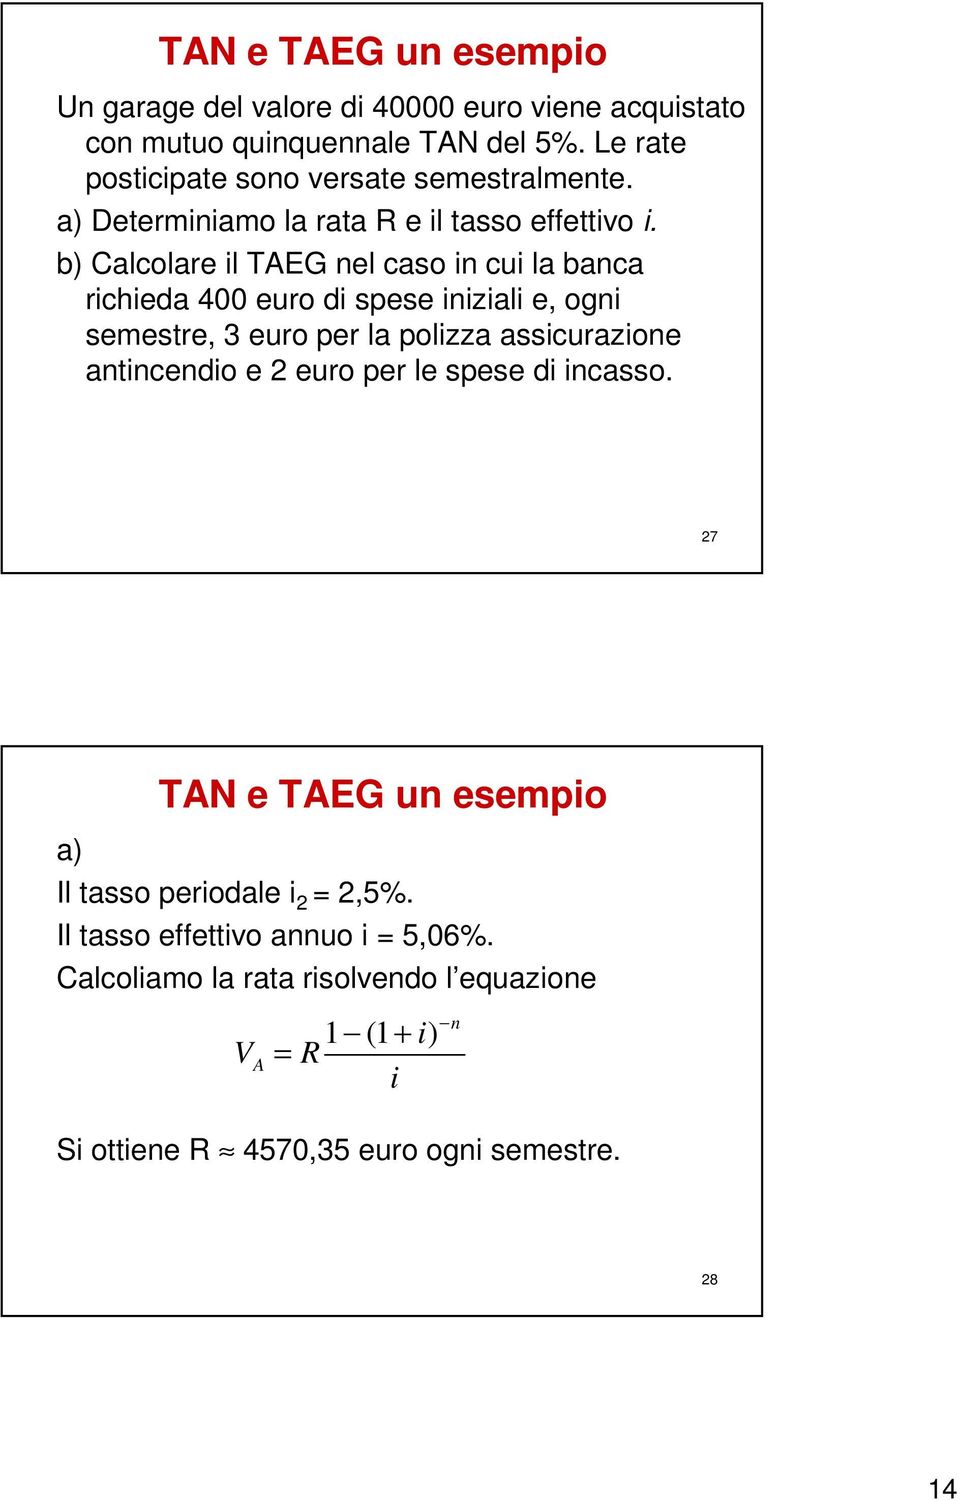 b) Calcolare l TAEG el caso cu la baca rcheda 400 euro d spese zal e, og semestre, 3 euro per la polzza asscurazoe atcedo e 2